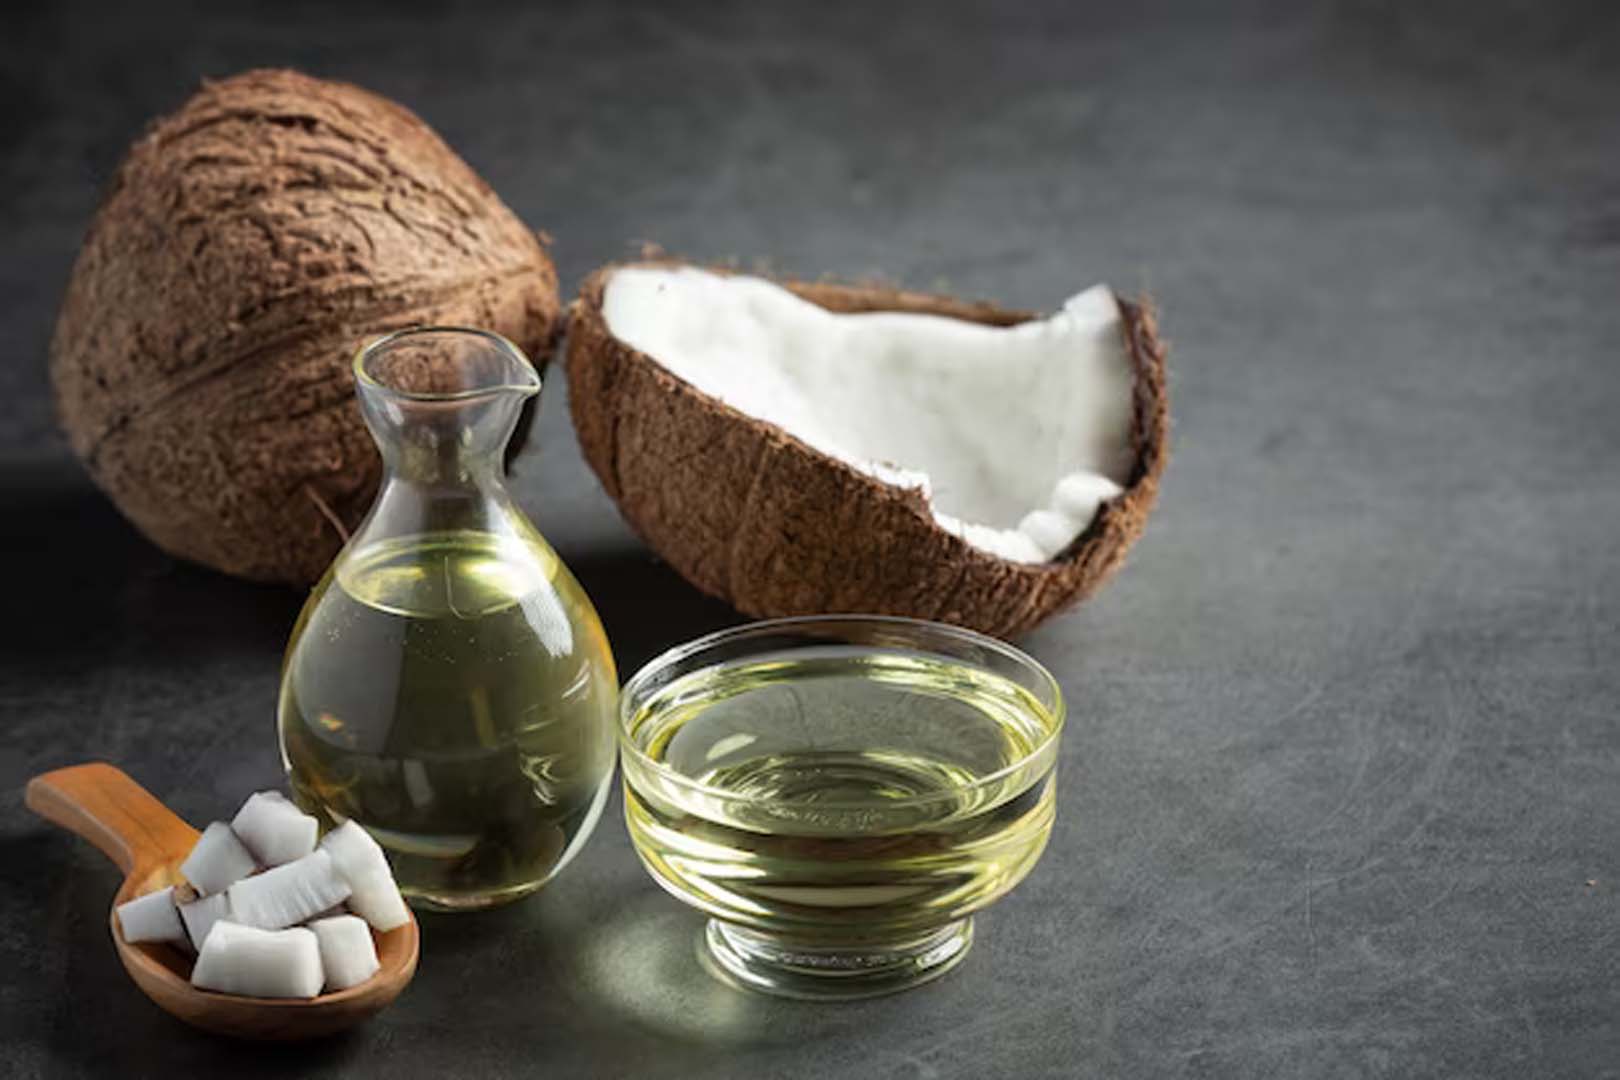  Mengenal Virgin Coconut Oil, Manfaat dan Cara Pembuatannya